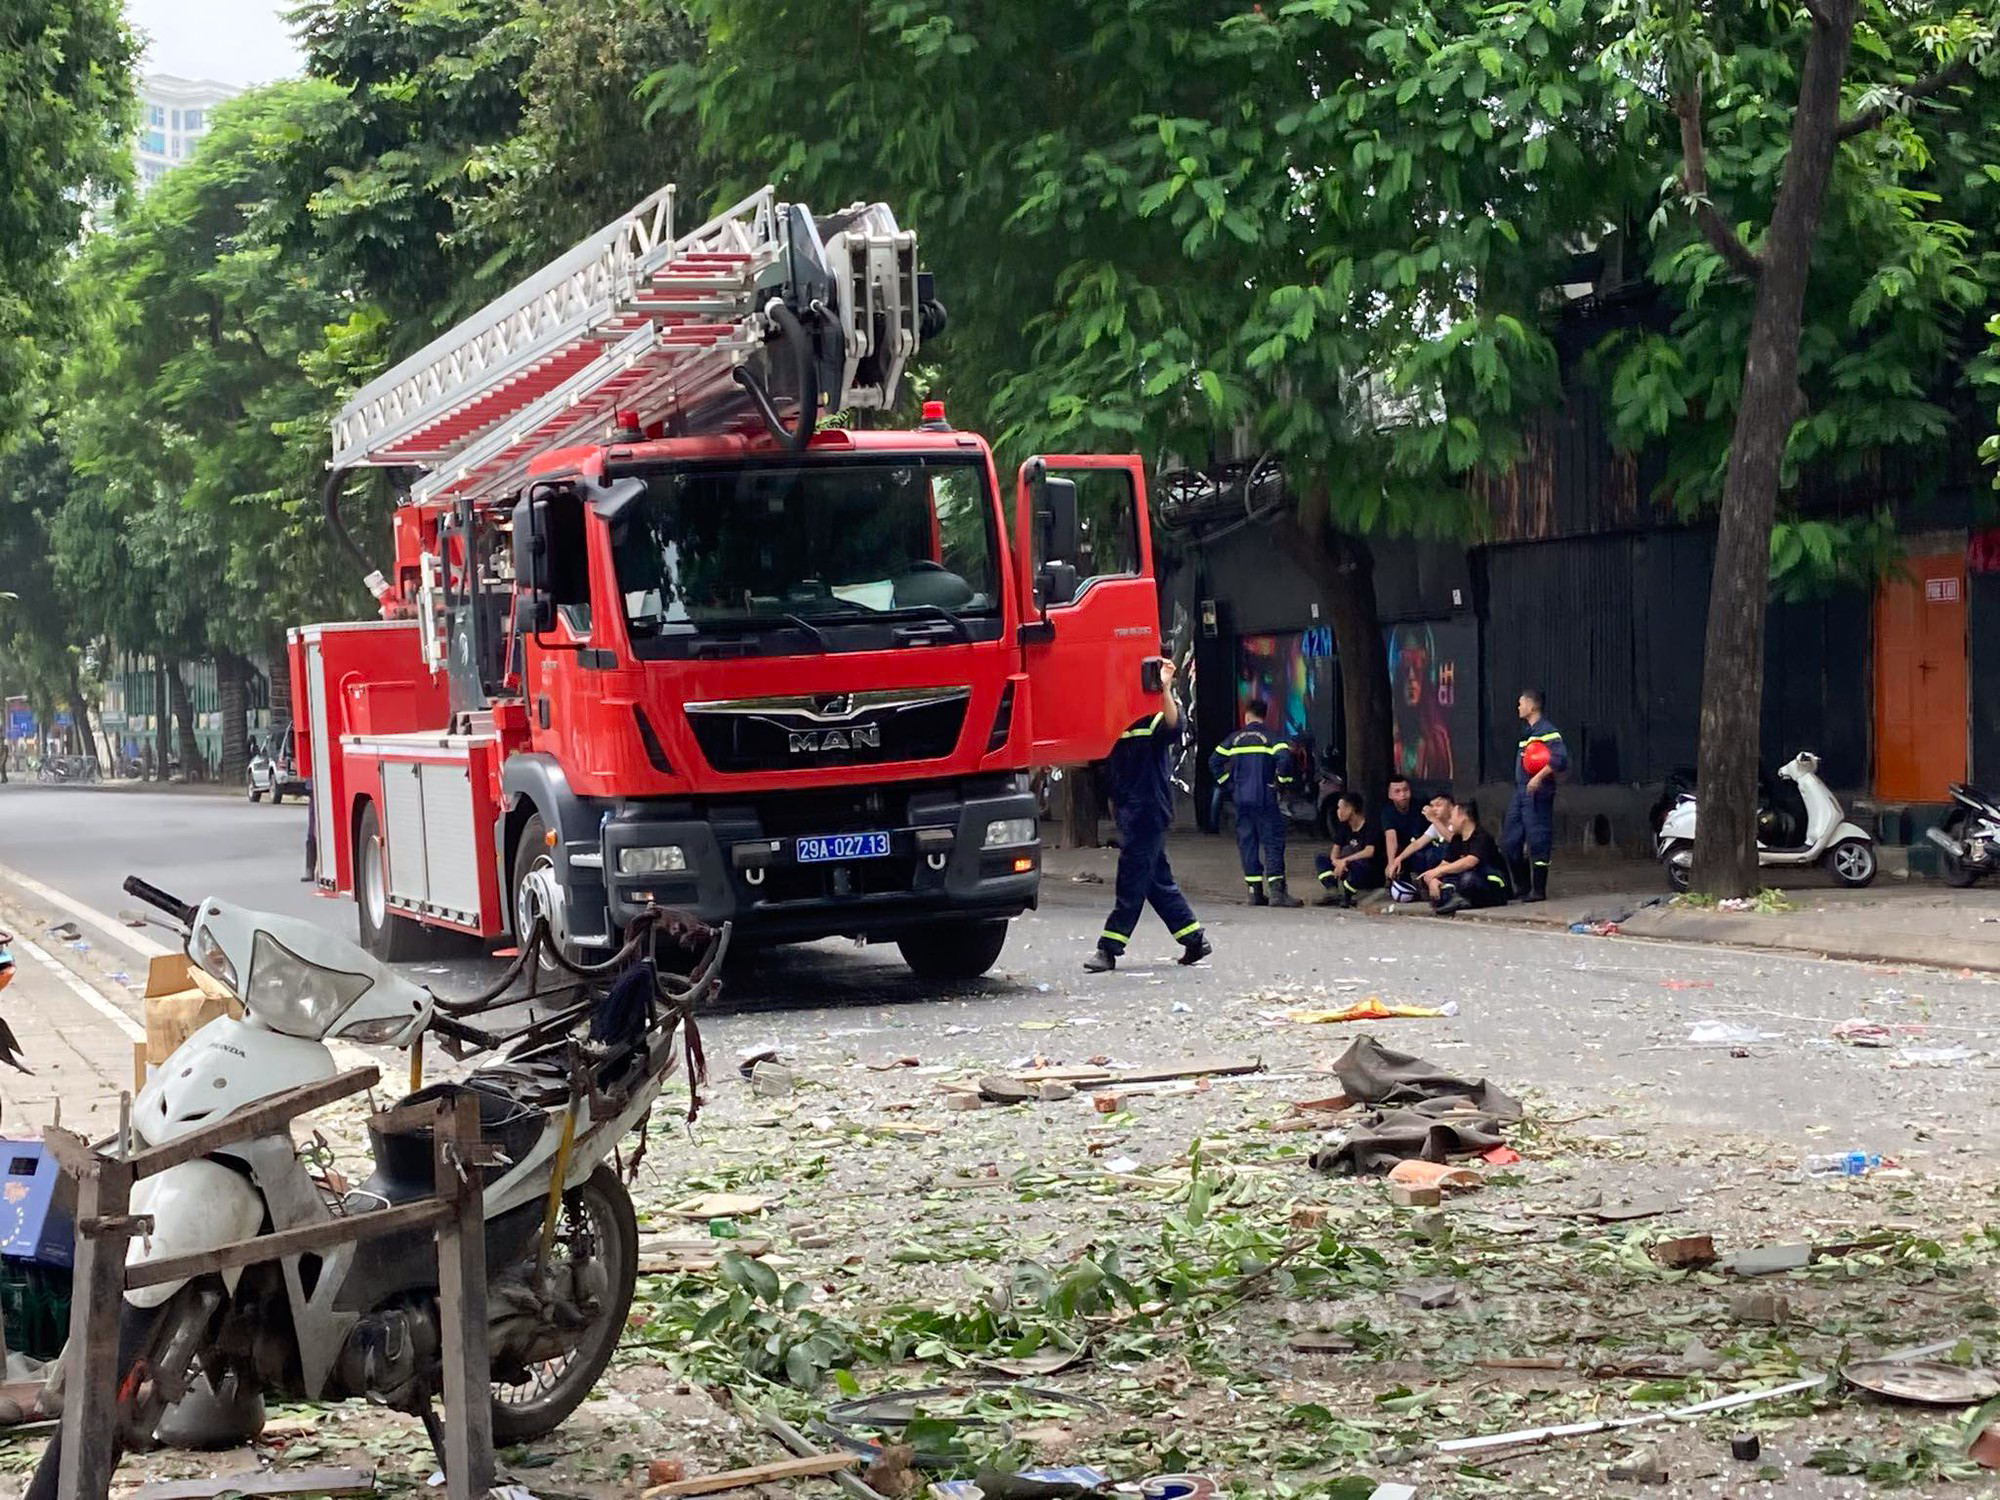 Hiện trường tan hoang sau nổ lớn cực lớn quán lẩu ở phố Yên Phụ, nhiều người bị thương nặng - Ảnh 5.